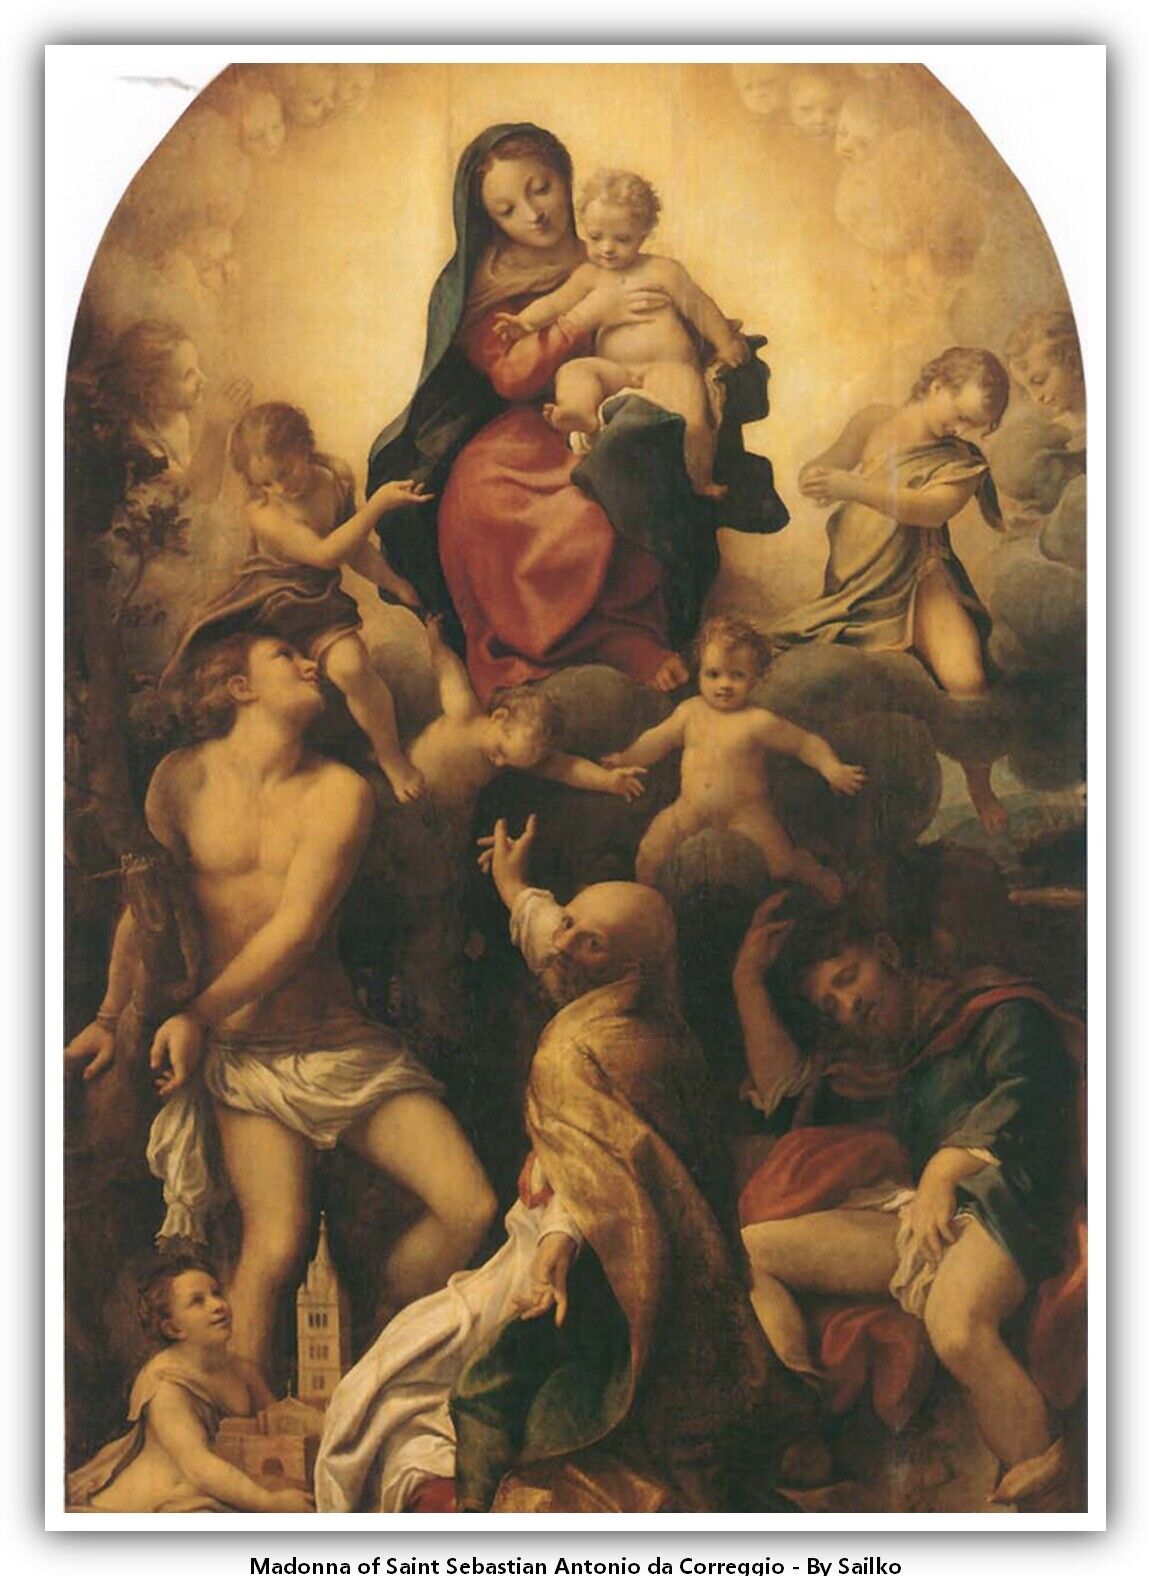 Madonna of Saint Sebastian Antonio da Correggio